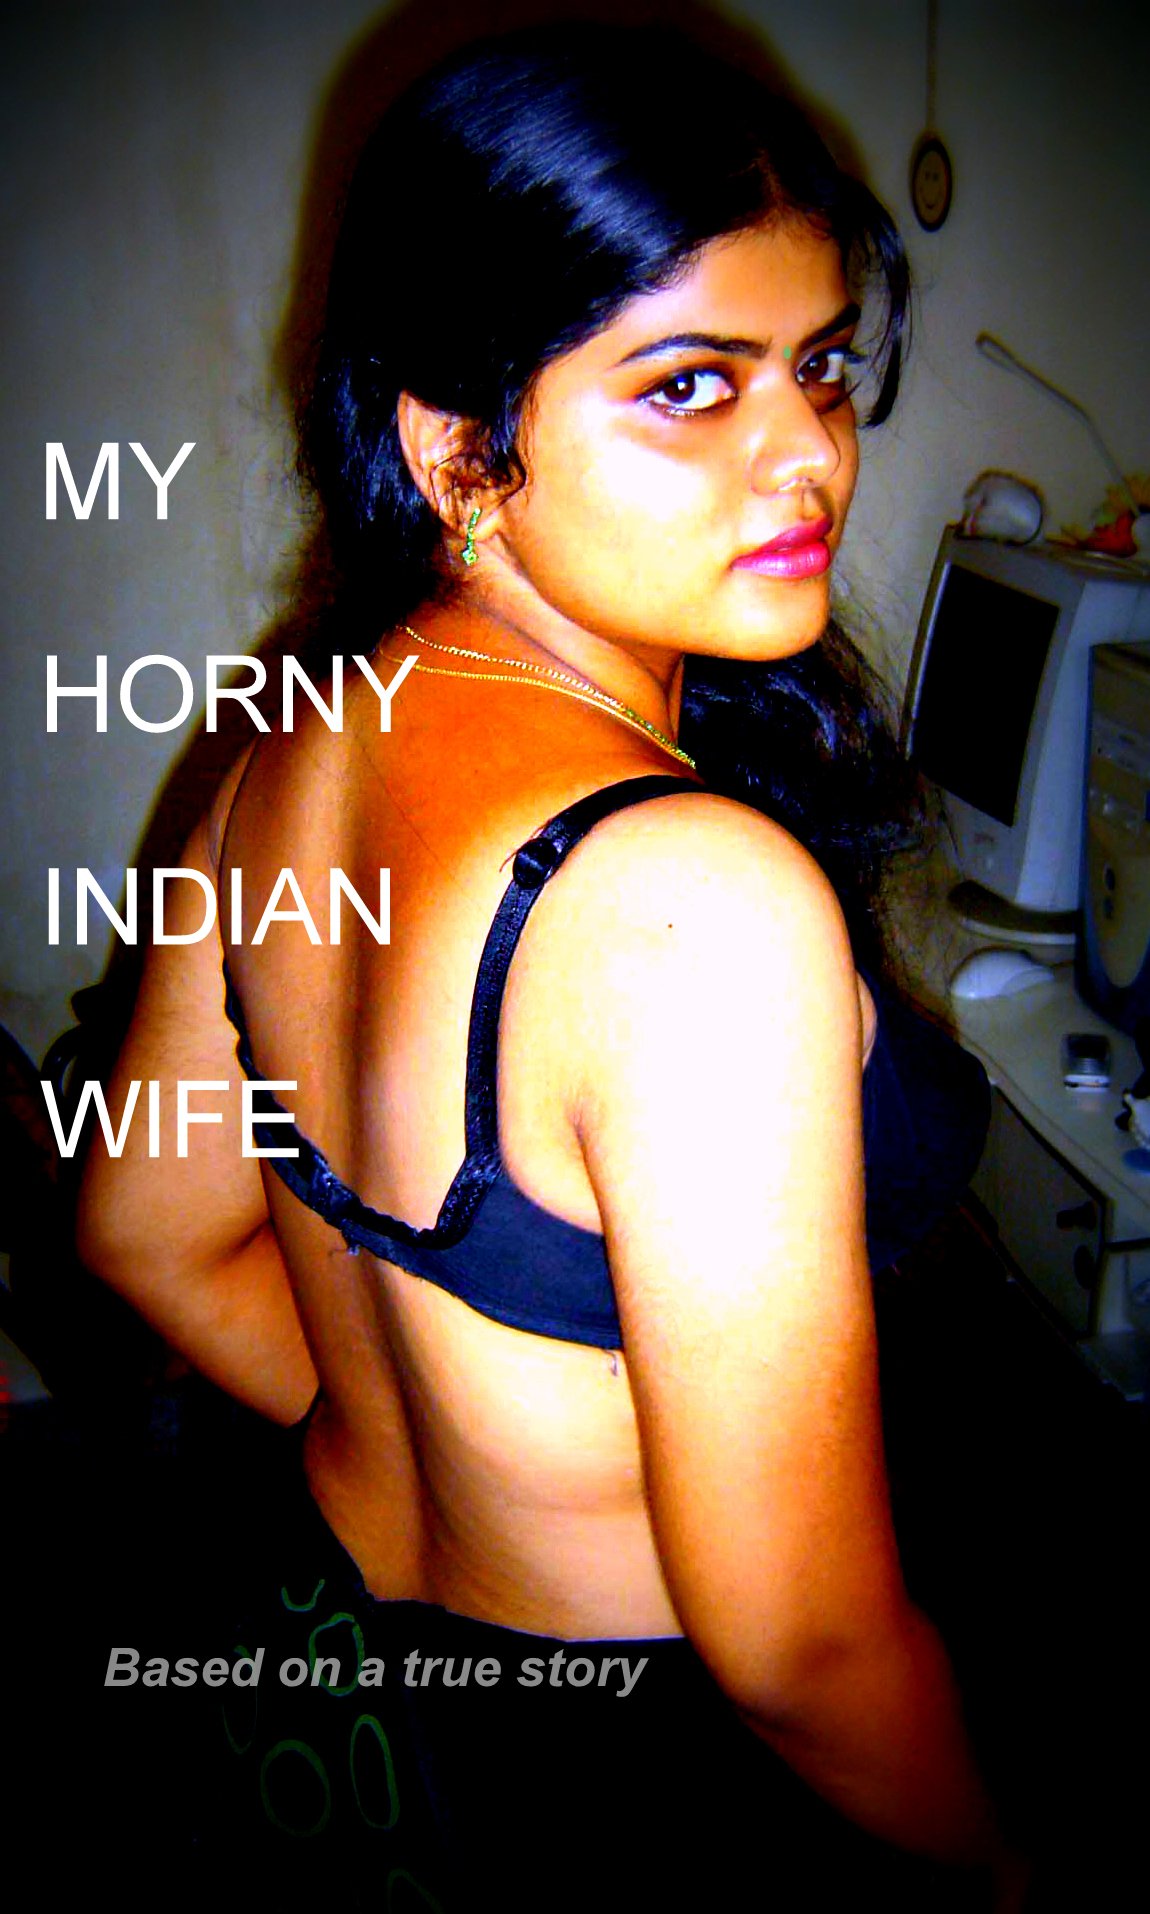 ahsaan husain share my horny wife photos